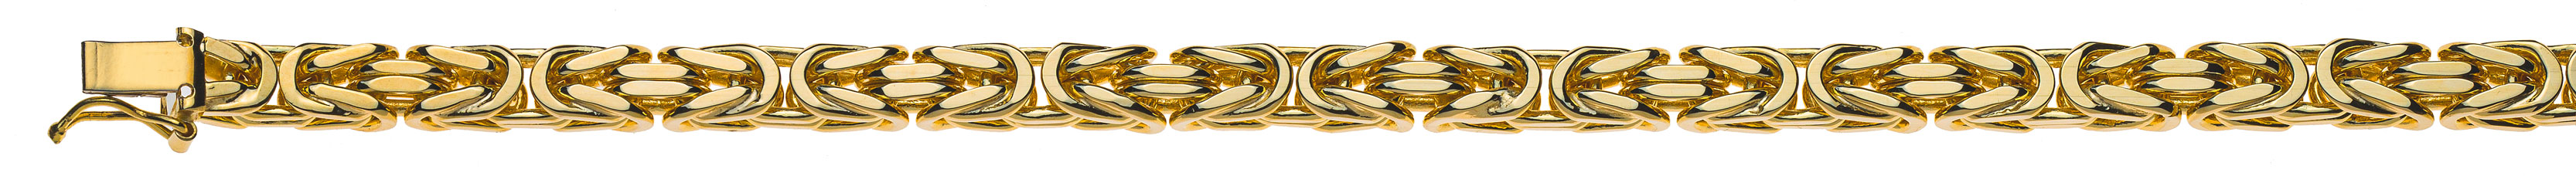 AURONOS Prestige Halskette Gelbgold 18K Königskette 45cm 5mm